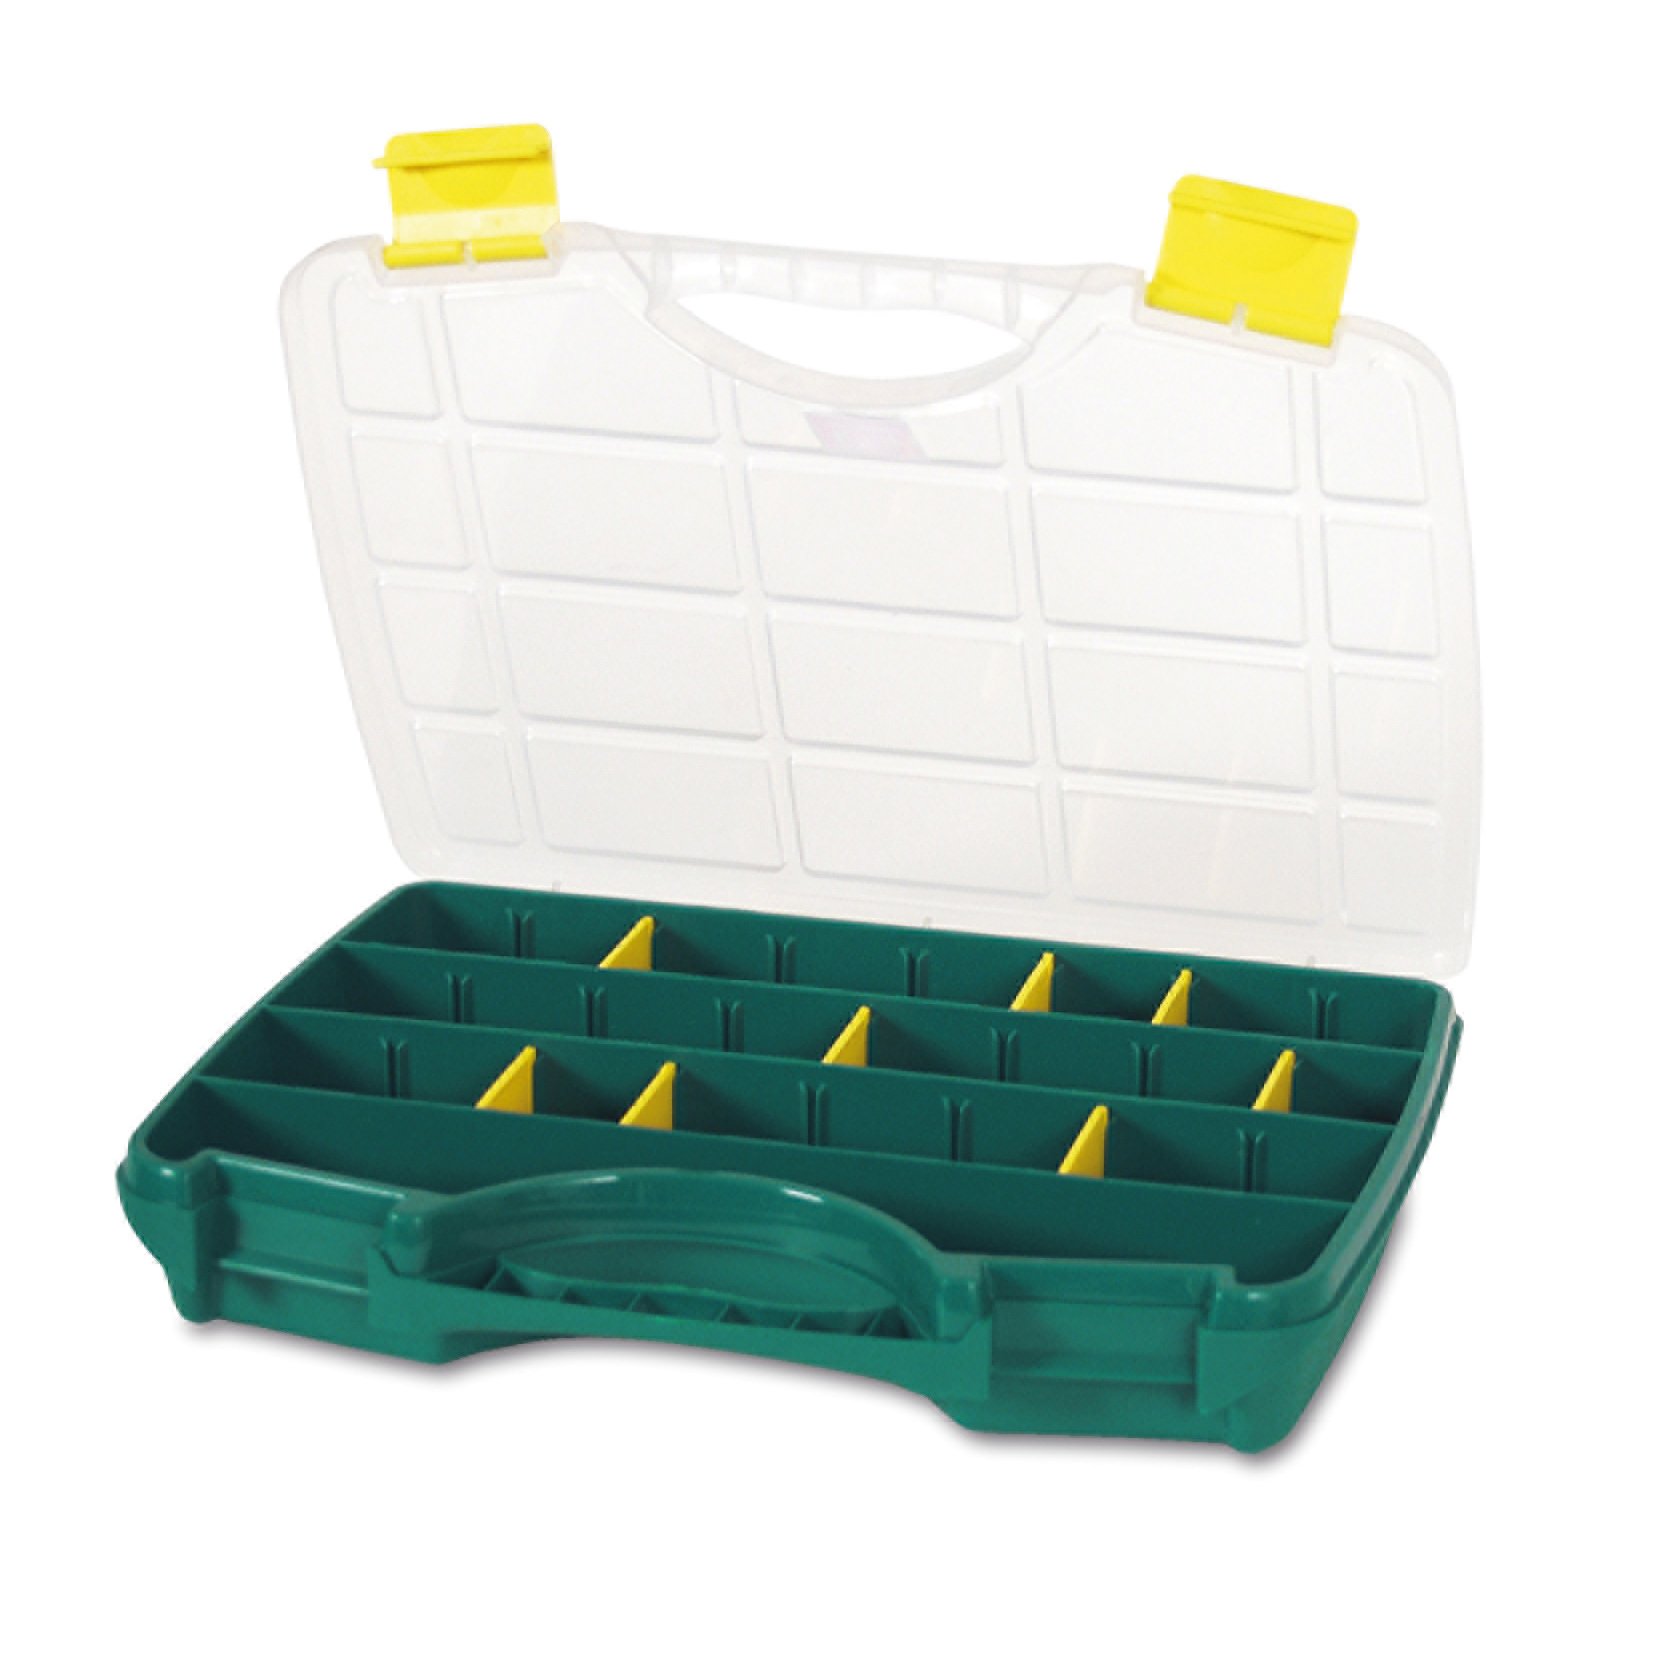 Органайзер Tayg Box 23 Estuche, для хранения мелких предметов, 38,8х29х6,1 см, зеленый (023002) - фото 1